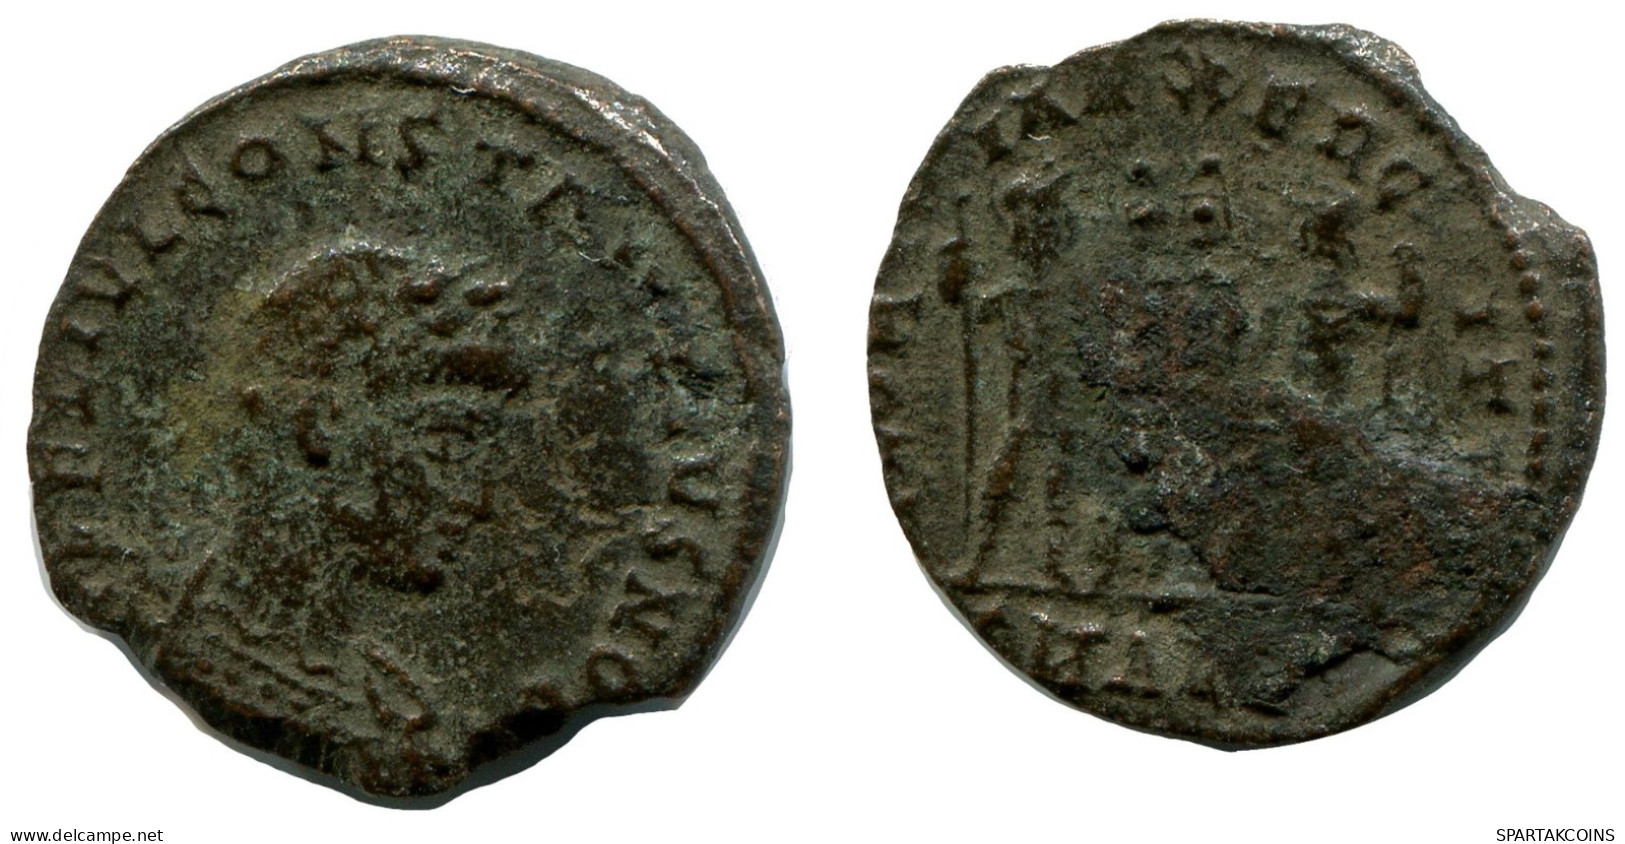 CONSTANTIUS II MINTED IN ALEKSANDRIA FOUND IN IHNASYAH HOARD #ANC10435.14.E.A - L'Empire Chrétien (307 à 363)